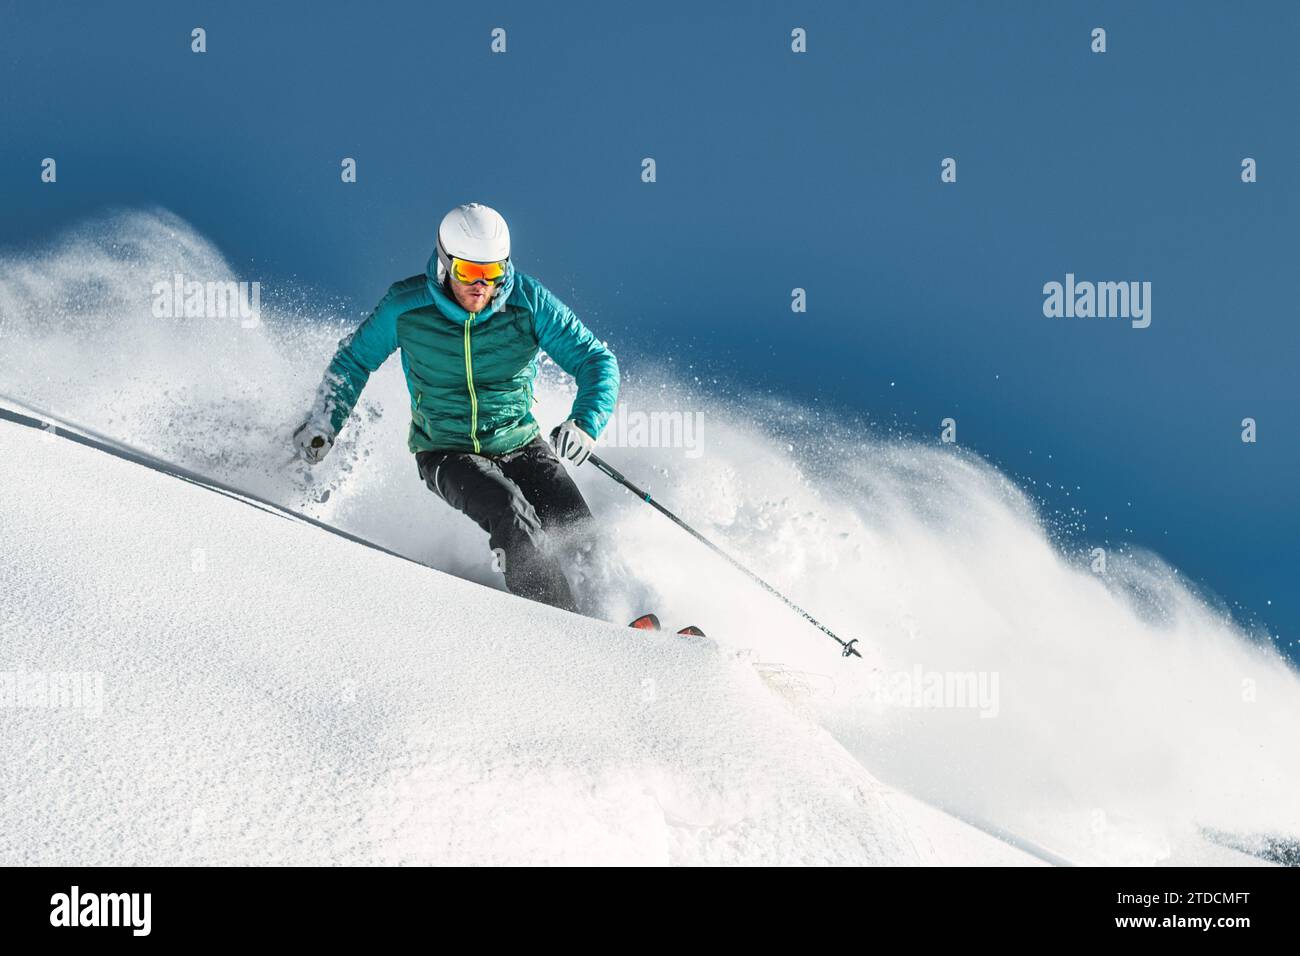 Skieur hors-piste un jeune homme Banque D'Images